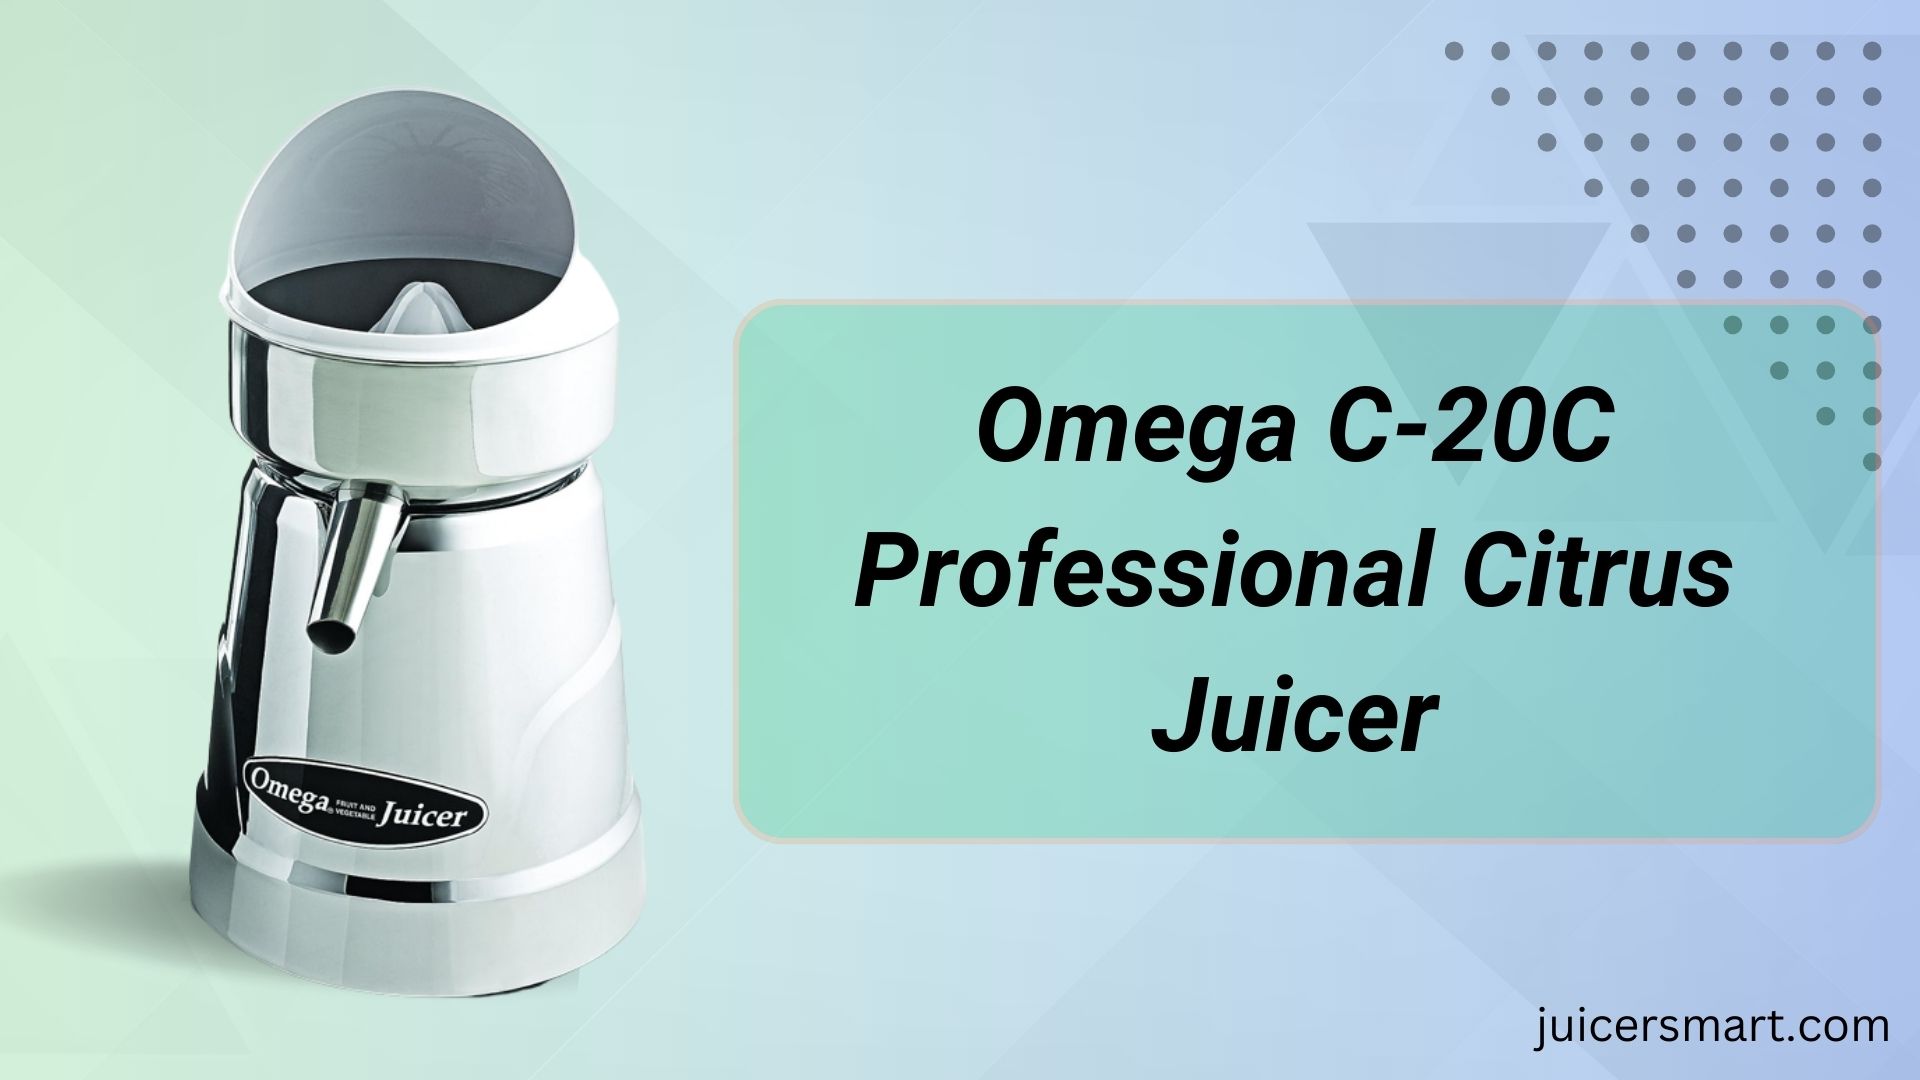 Omega C-20C Professional Citrus Juicer